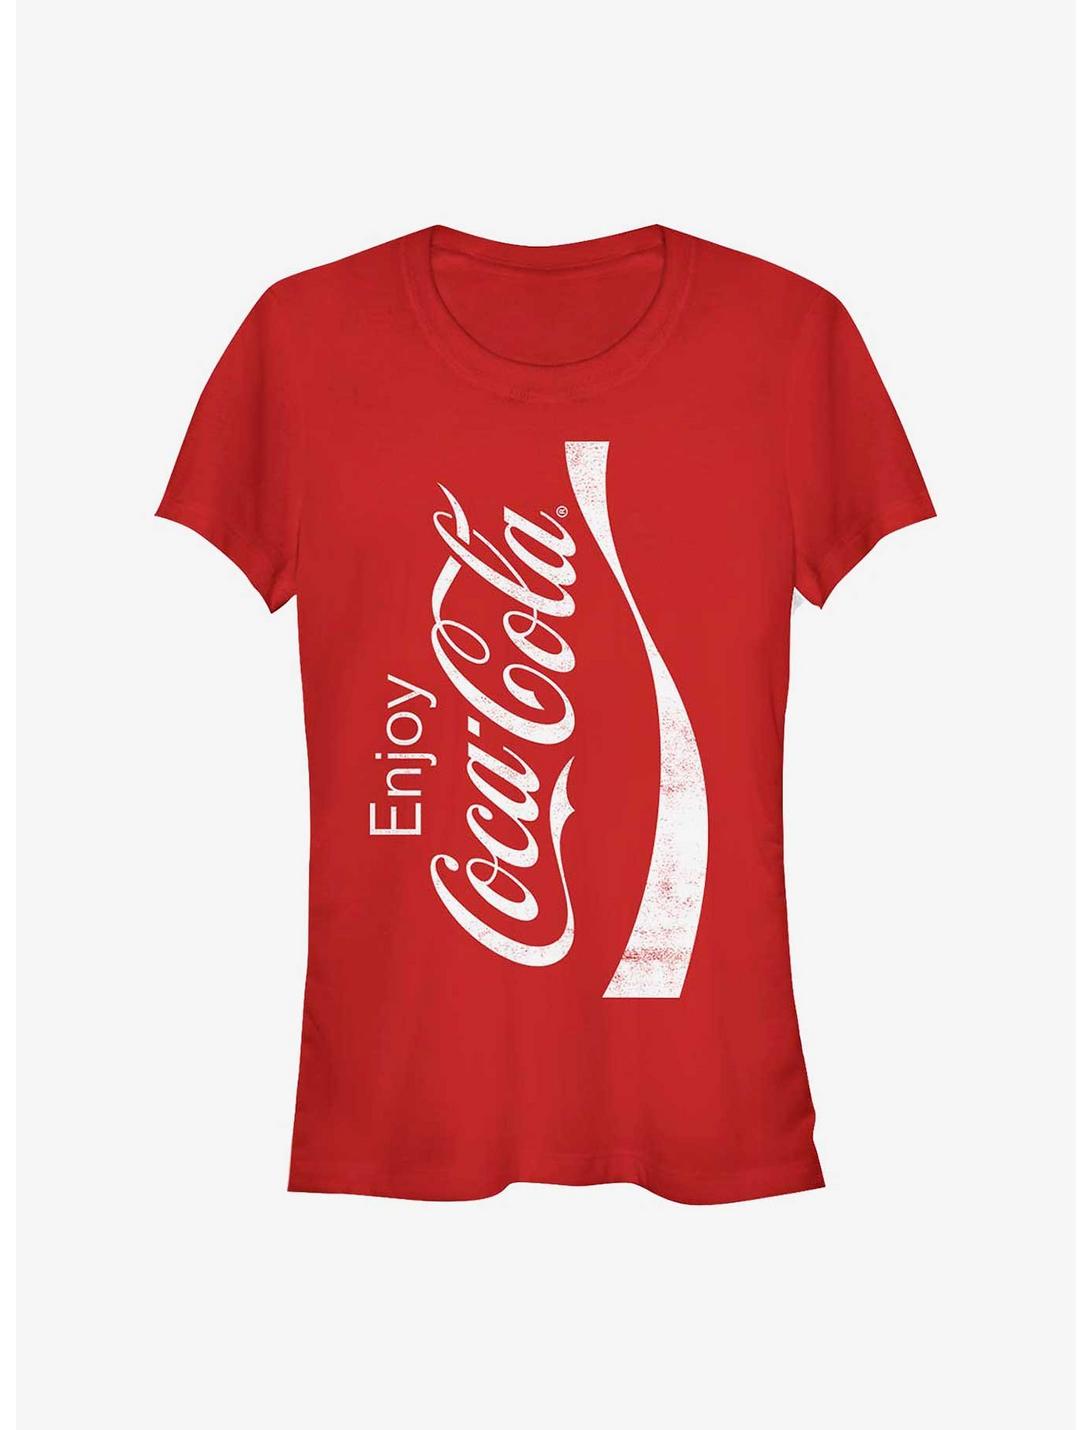 Coke Enjoy Coke Girls T-Shirt, RED, hi-res